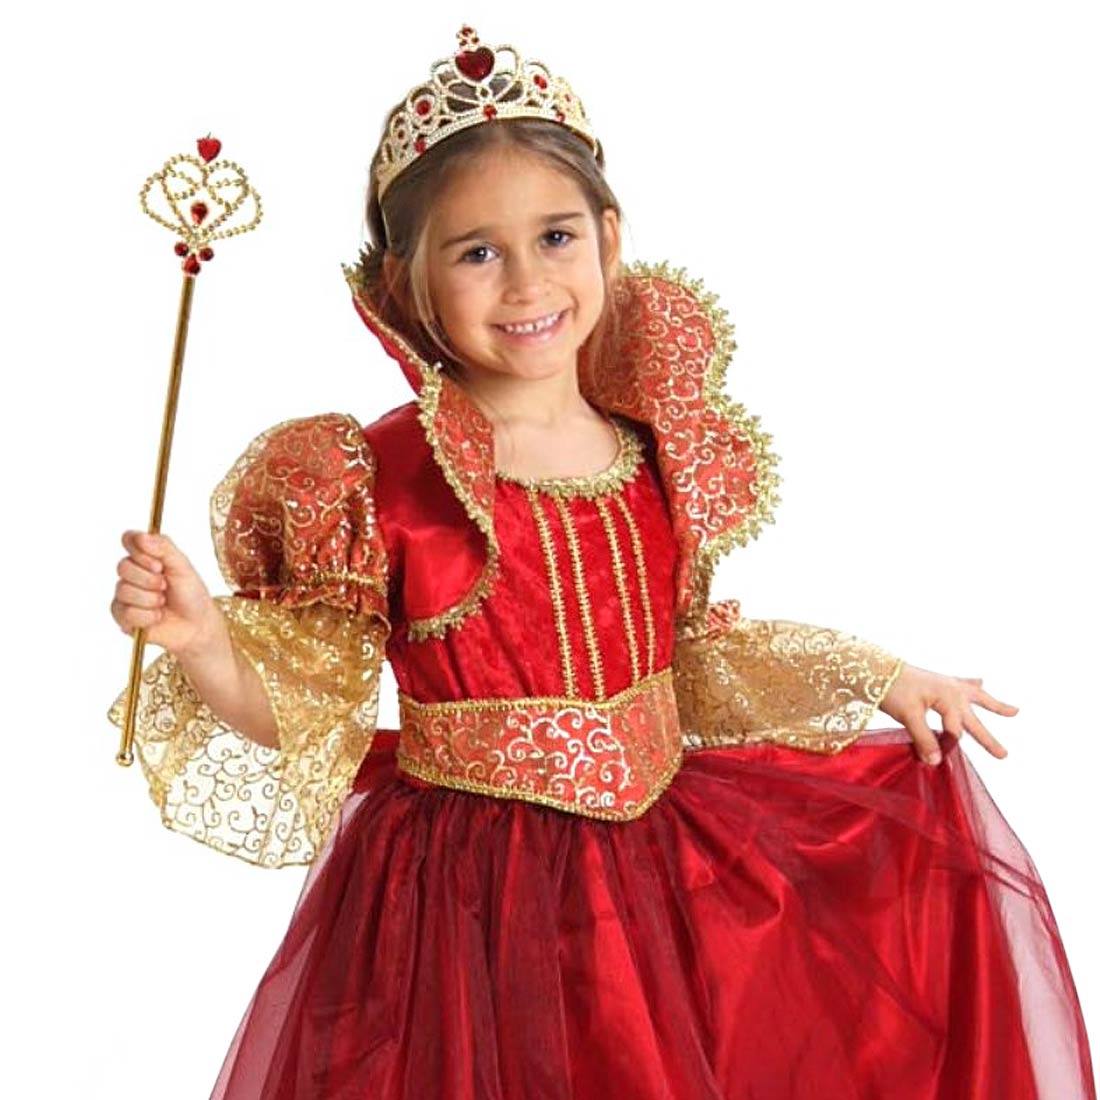 Есть новогодние костюмы. Образ принцессы для девочки. Детский костюм принцессы. Костюм принцессы для девочки. Костюм принцессы для девочки на новый год.